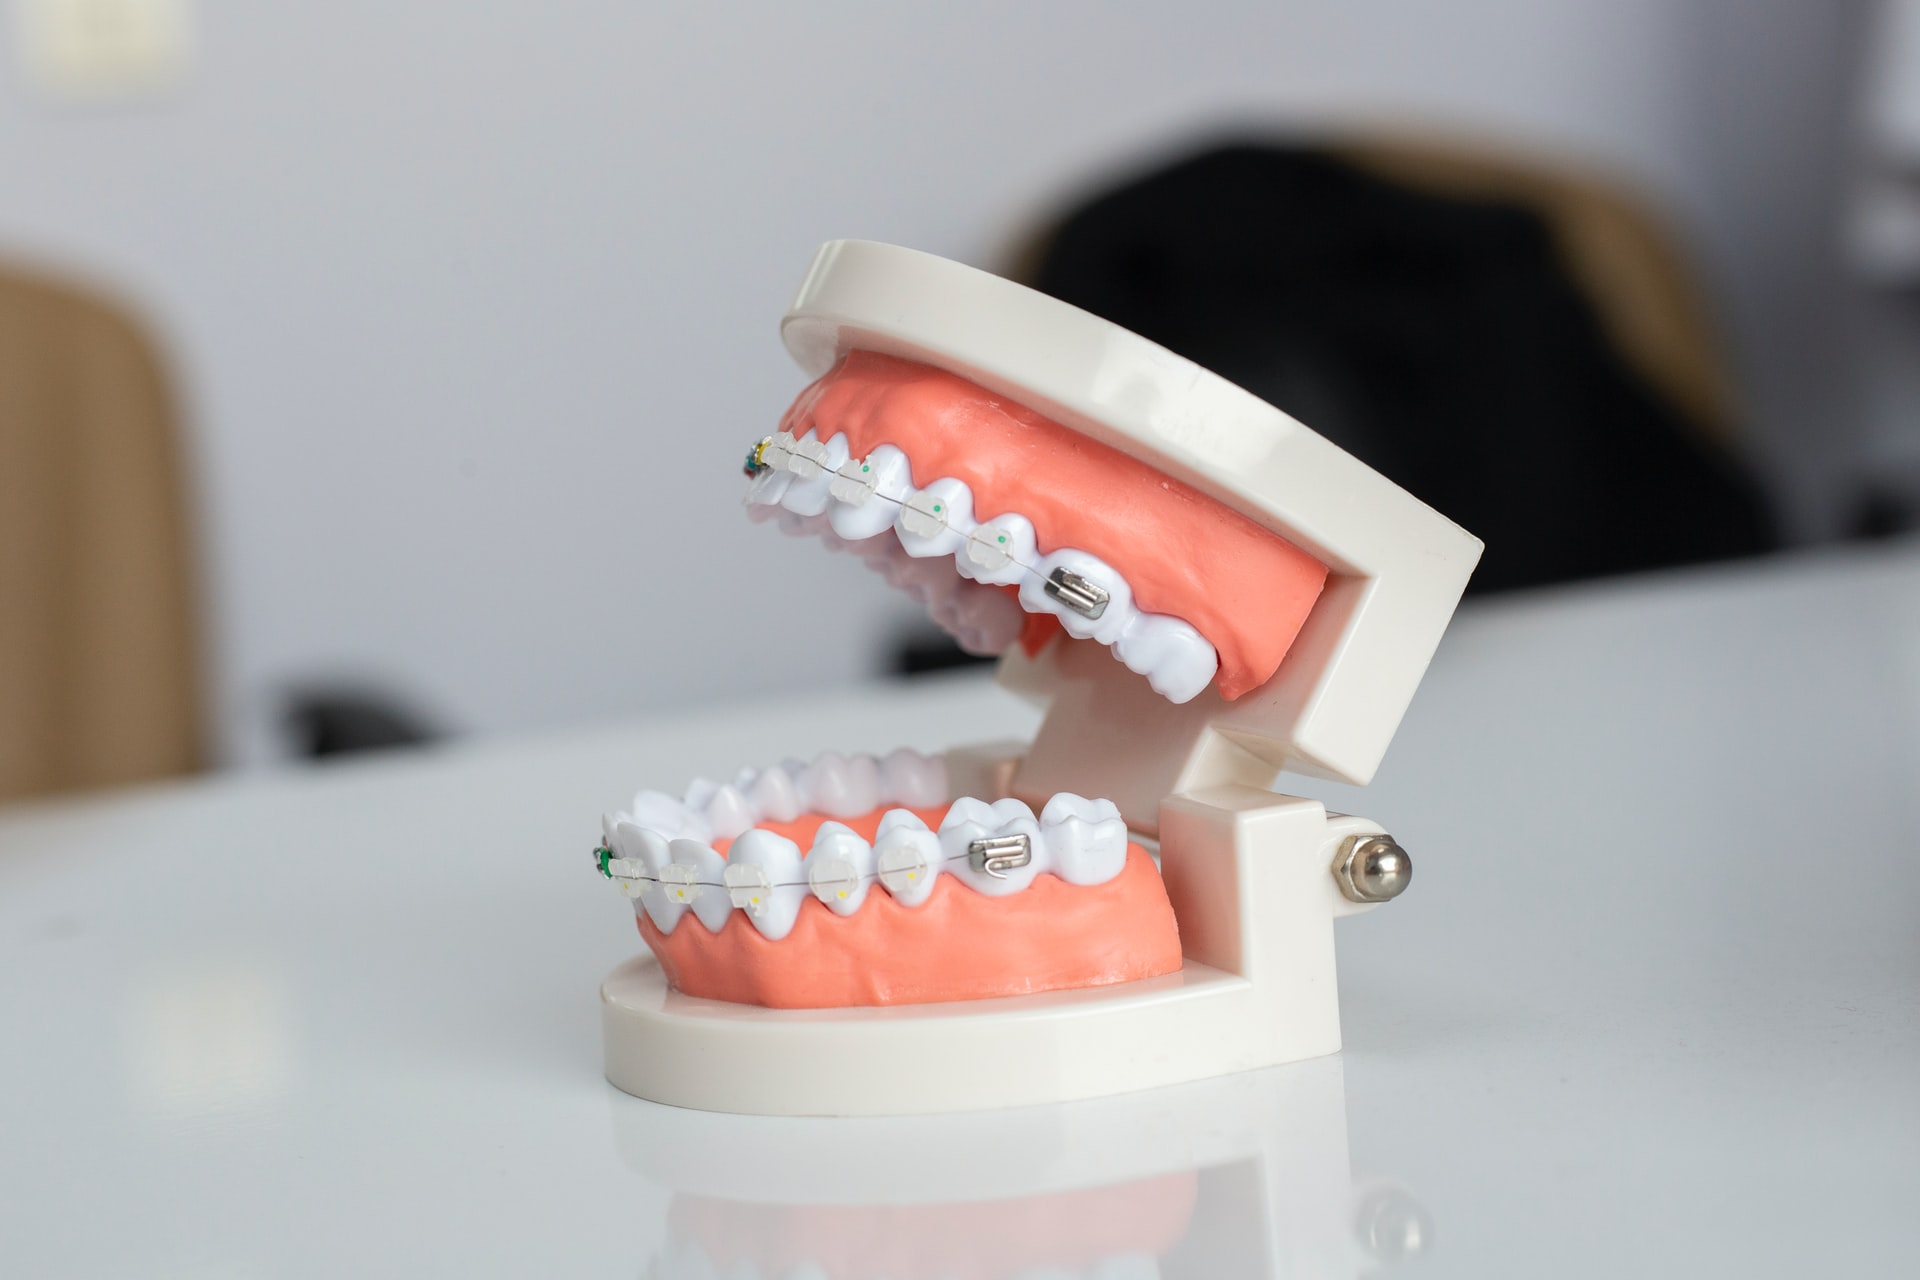 Mitos sobre la visita al dentista